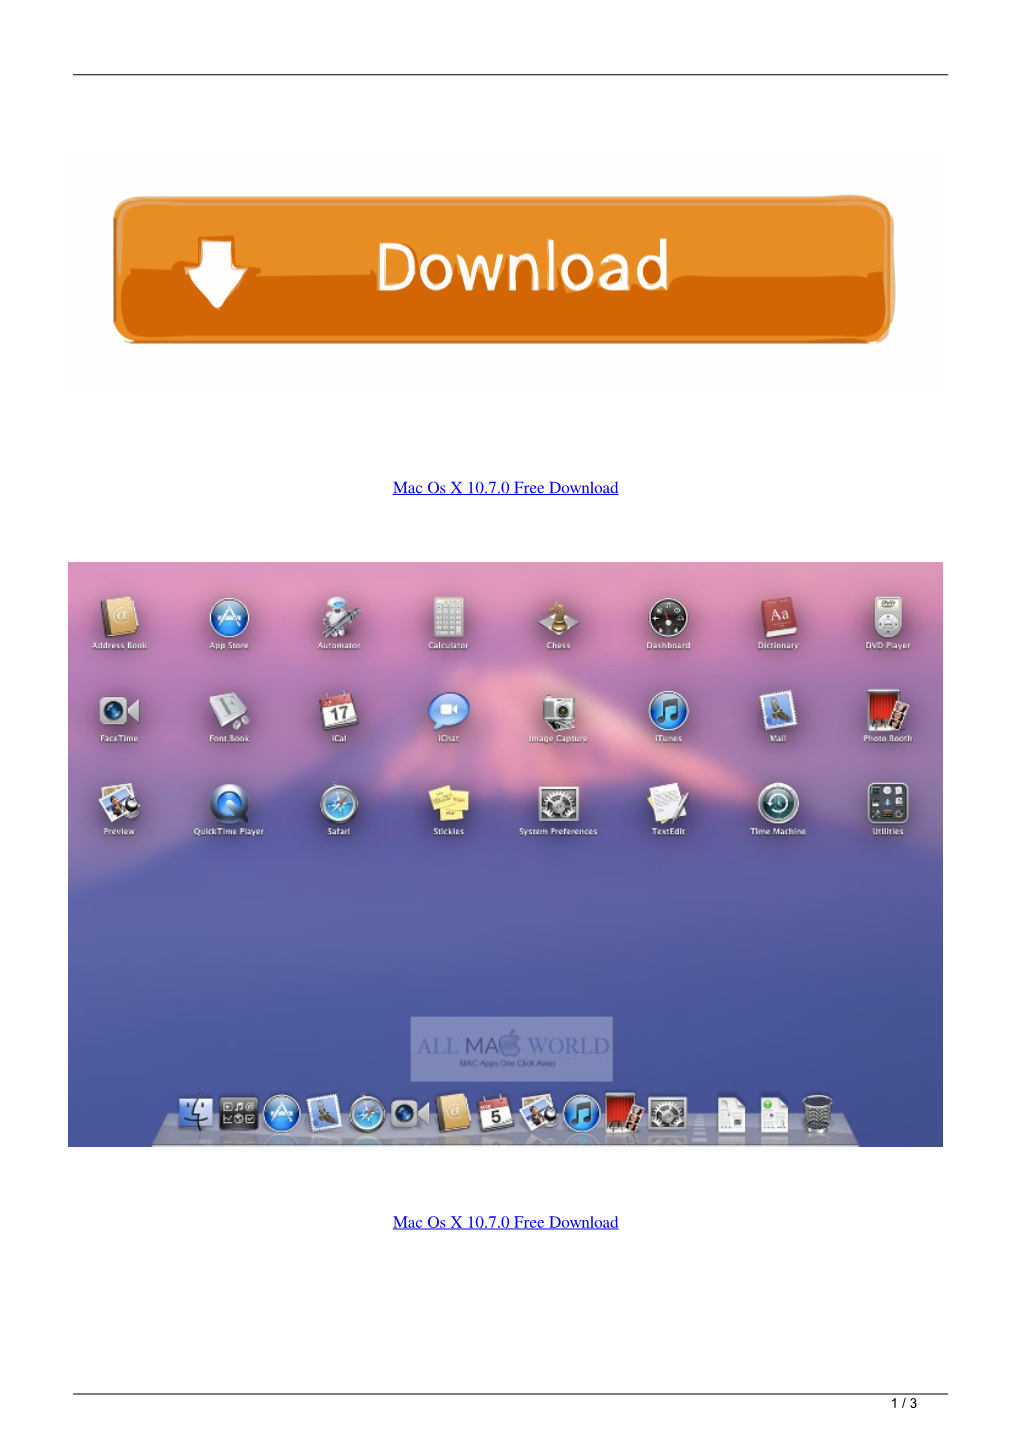 Mac Os X 1070 Free Download